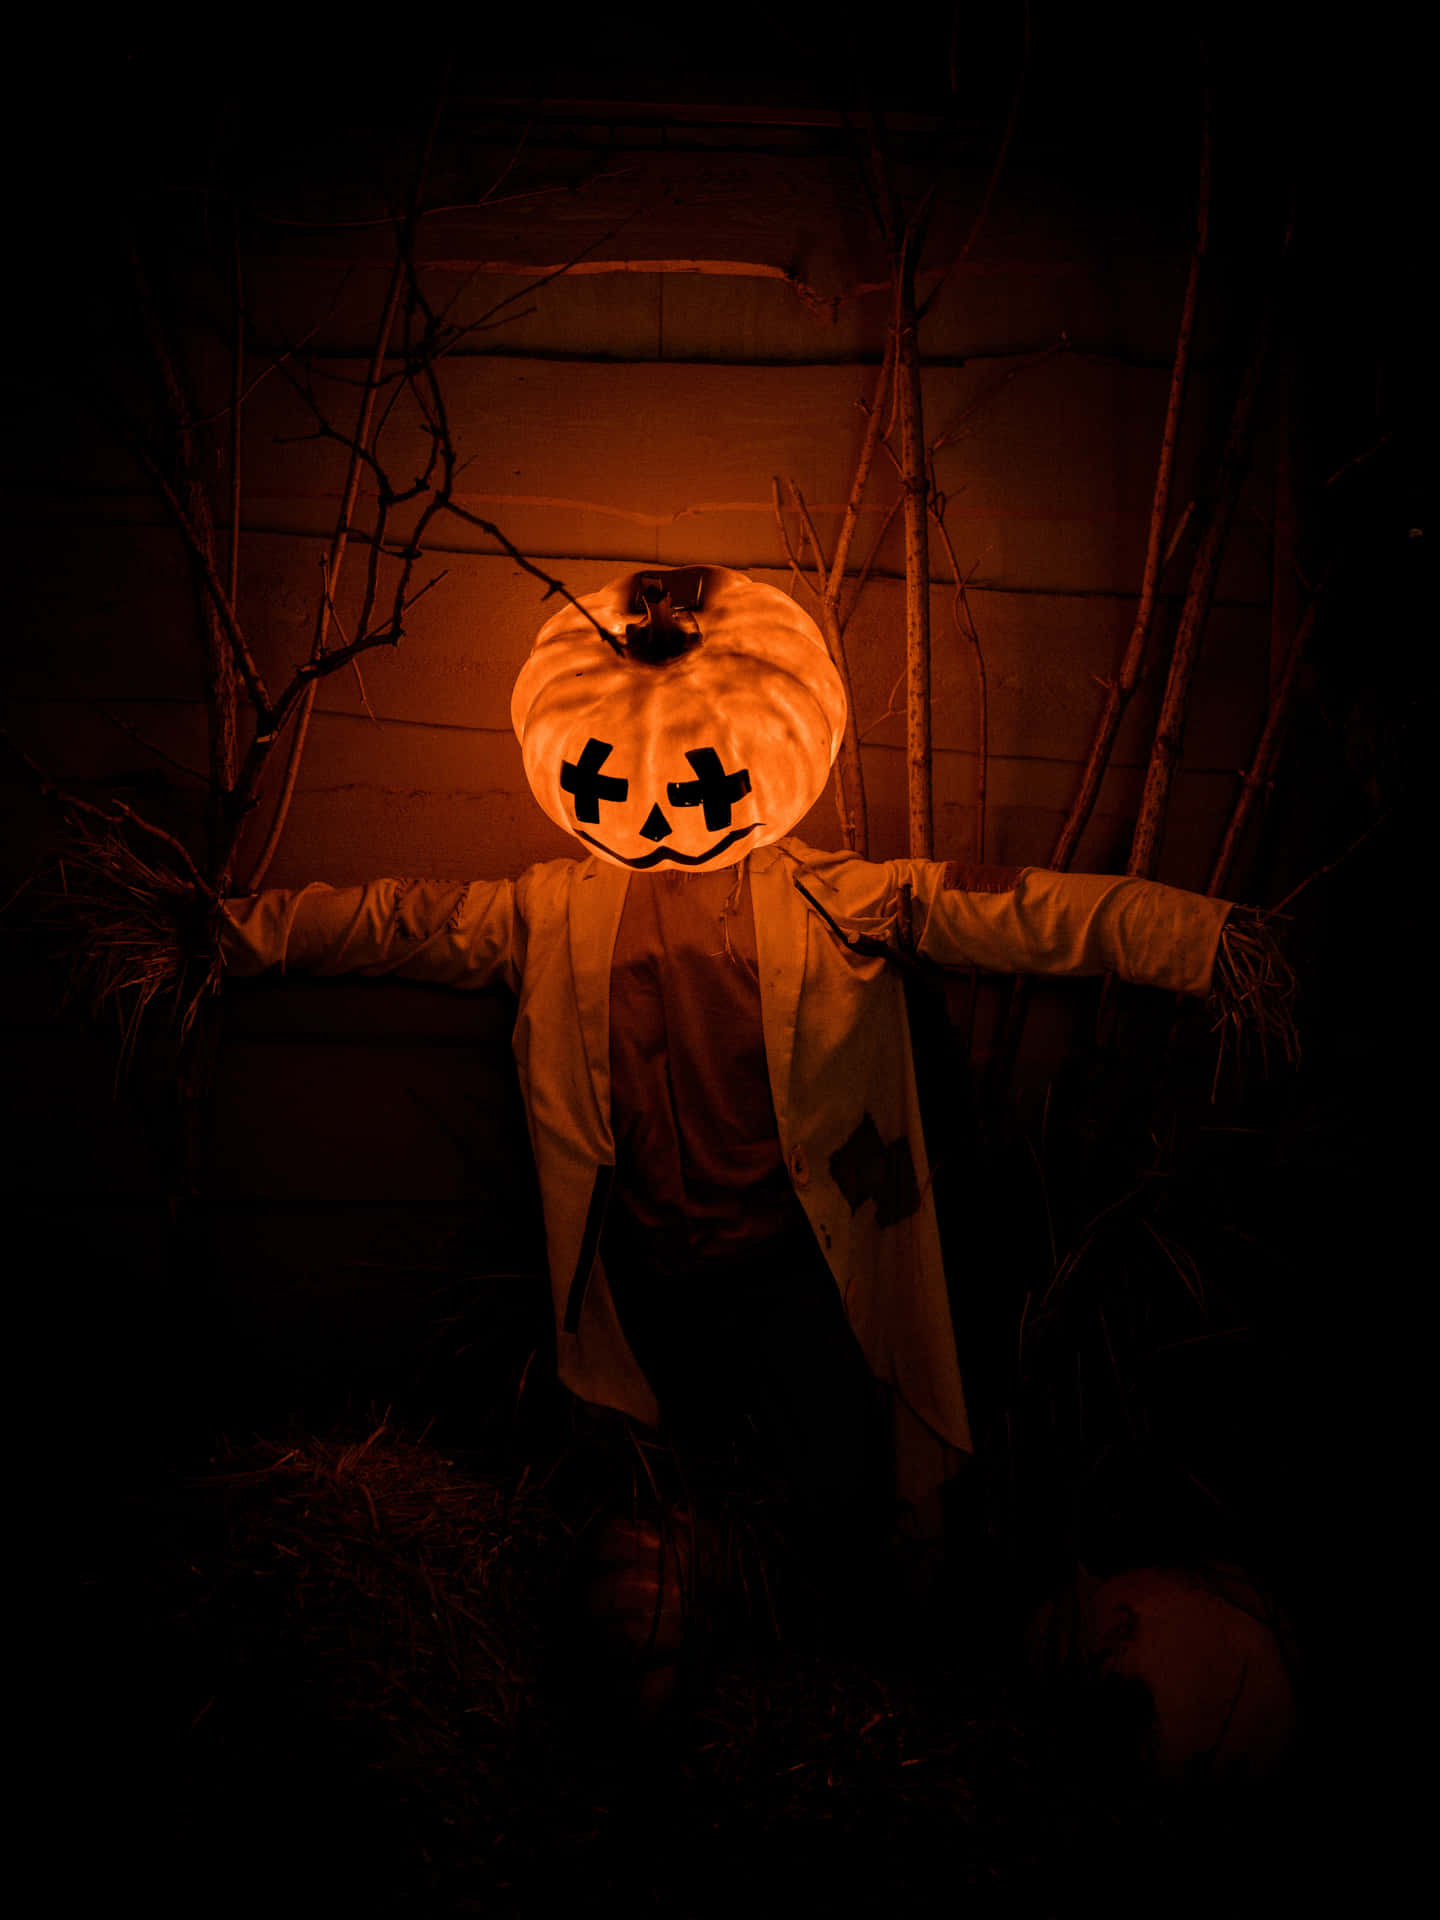 Fondode Pantalla De Halloween Con Alta Resolución De Jack-o-lantern Triste.